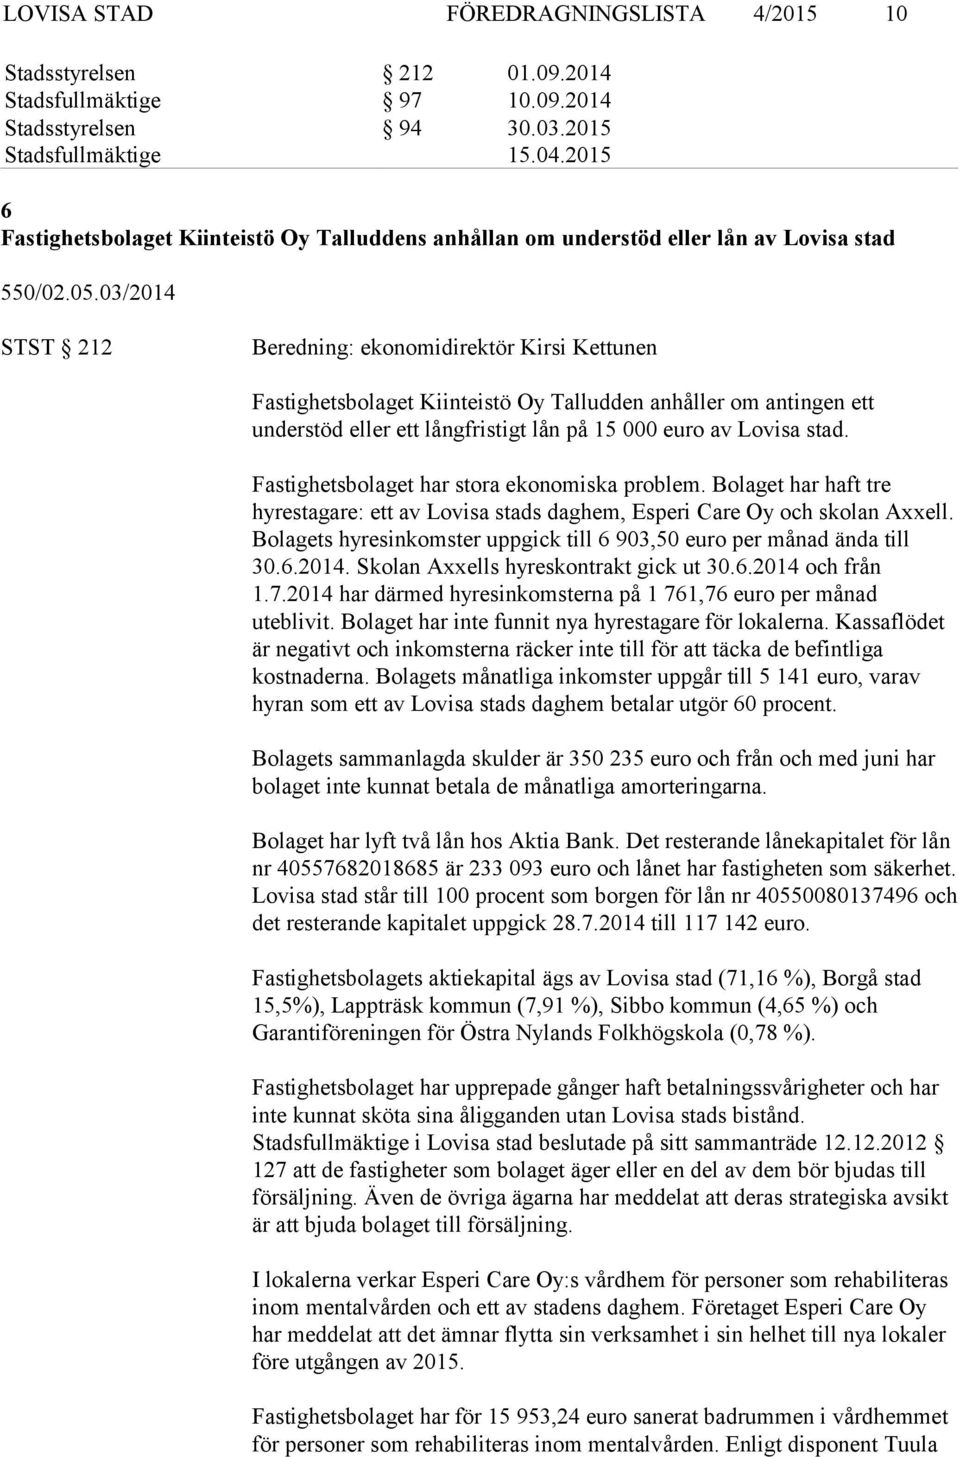 03/2014 STST 212 Beredning: ekonomidirektör Kirsi Kettunen Fastighetsbolaget Kiinteistö Oy Talludden anhåller om antingen ett understöd eller ett långfristigt lån på 15 000 euro av Lovisa stad.